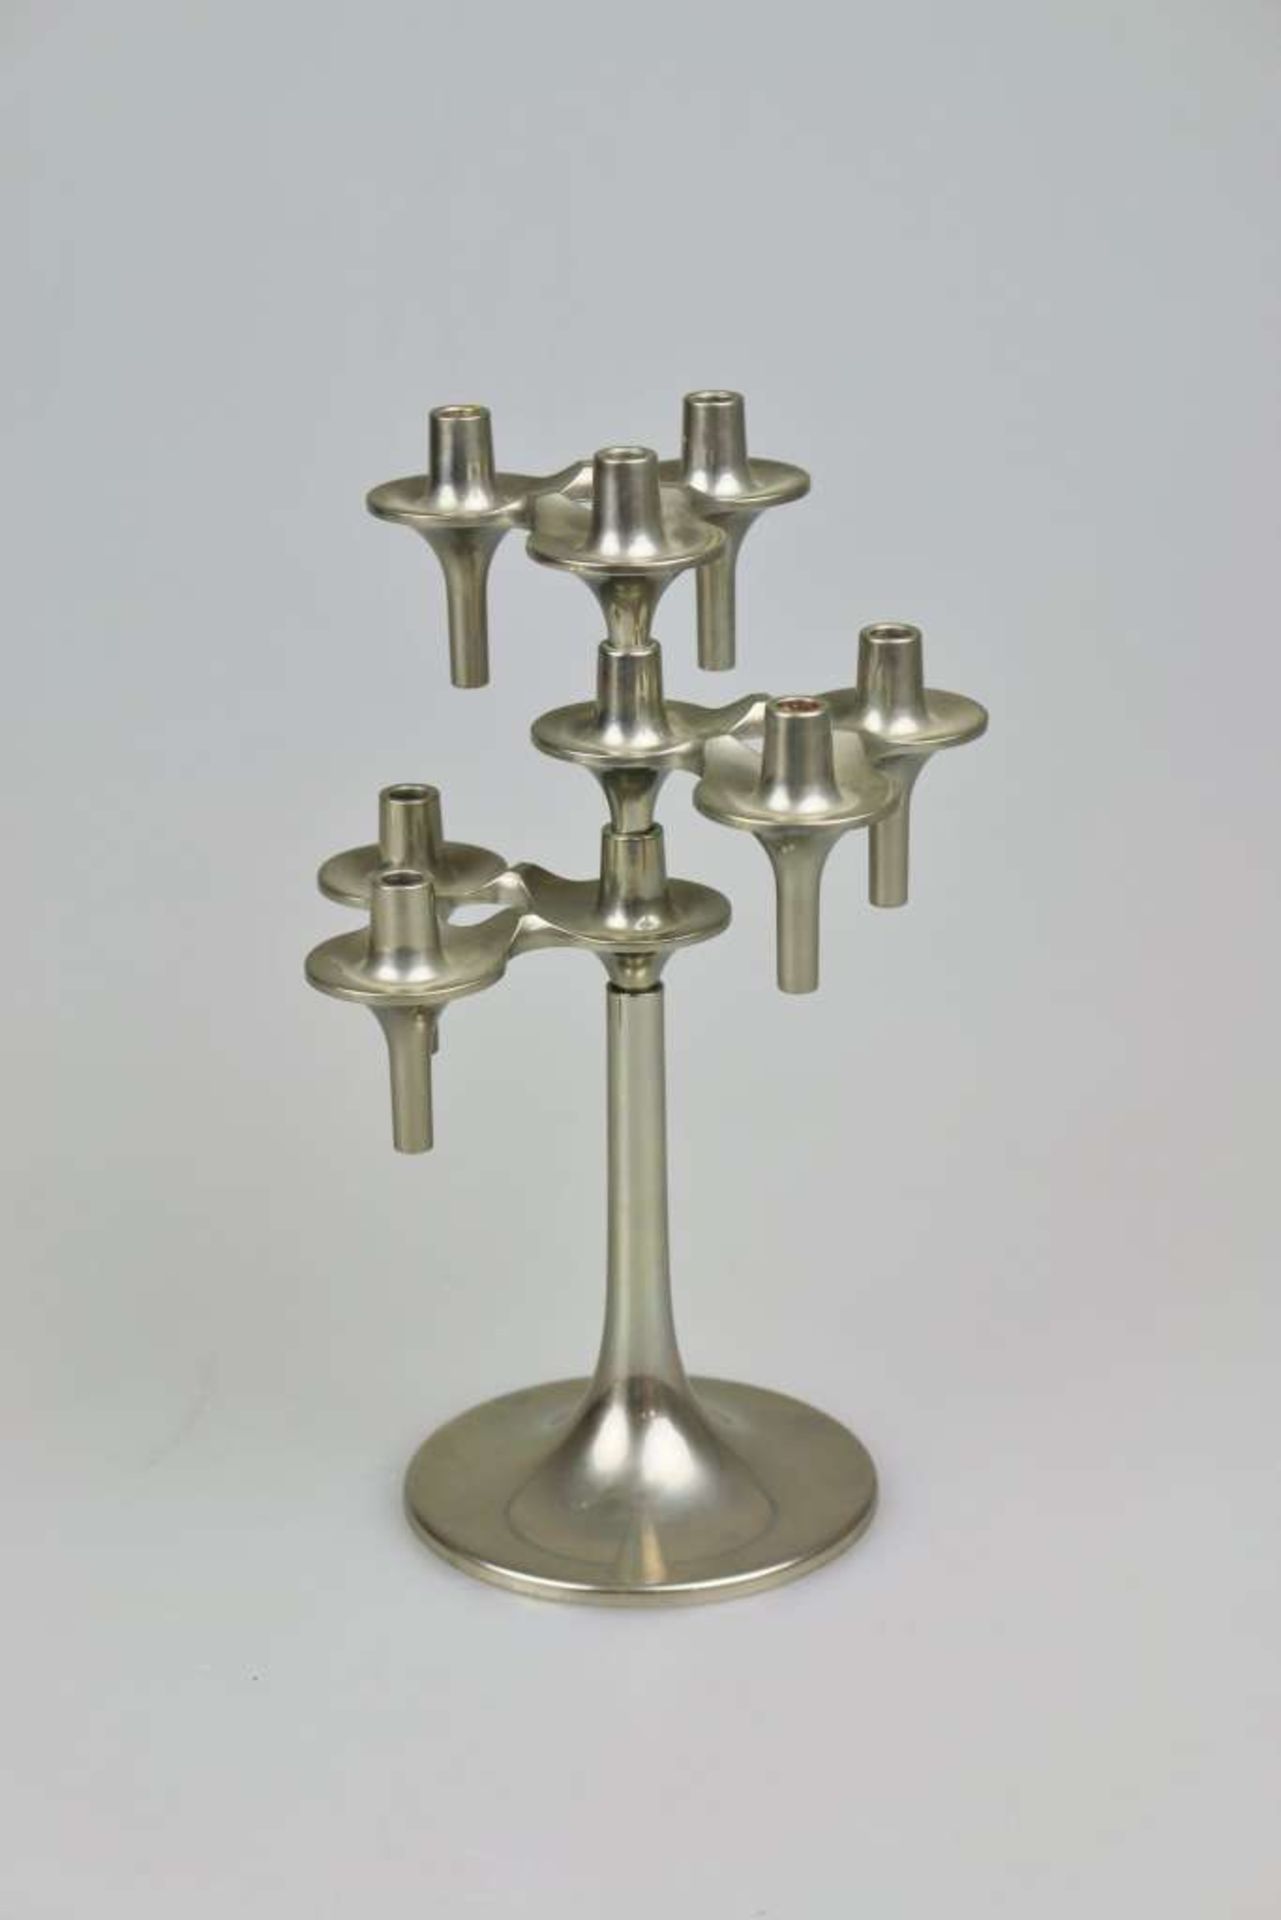 Modularer Orion Kerzenhalter von Fritz Nagel & Ceasar Stoffi für BMF, 1960er bis 1970er, drei